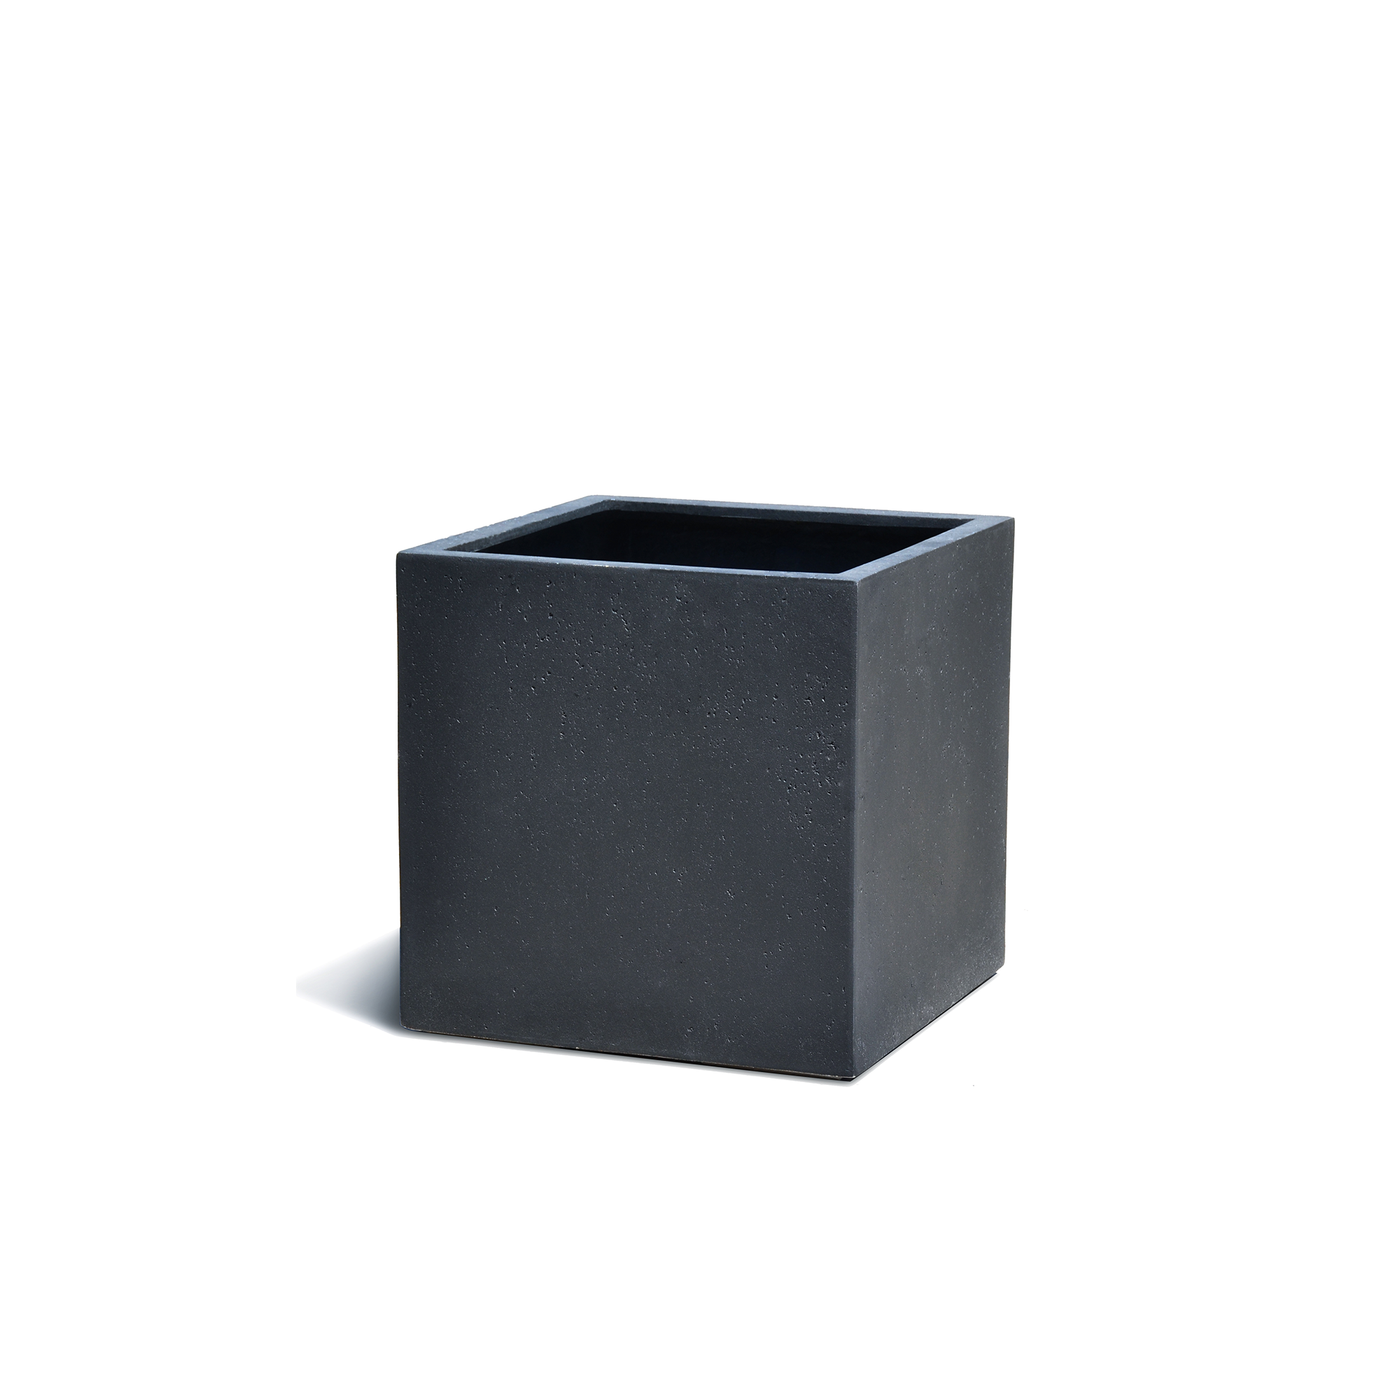 Cube Concrete Surface Charcoal